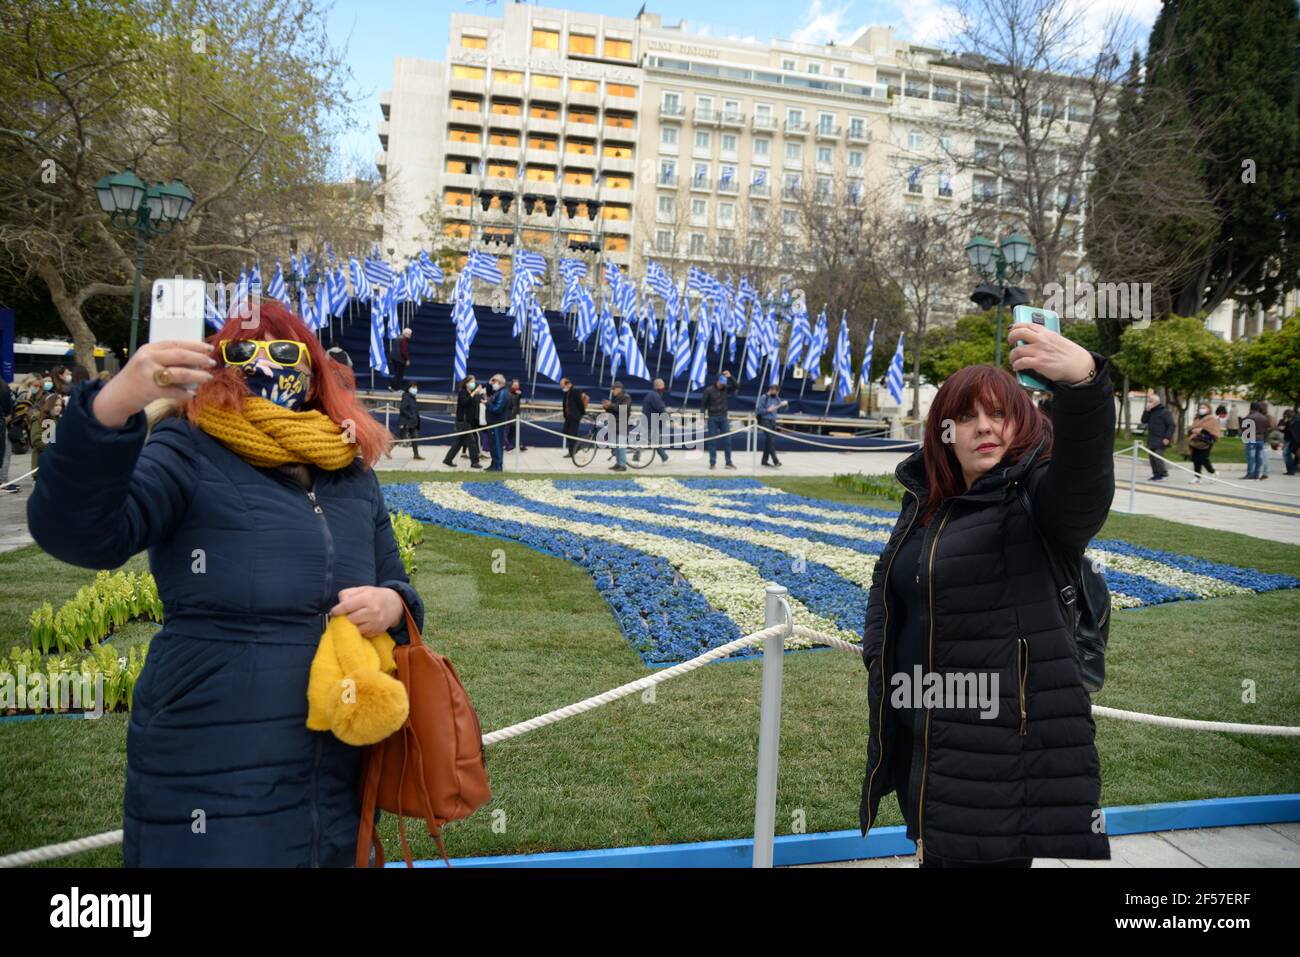 Griechische Flaggen auf dem Syntagma-Platz vor den Feierlichkeiten zum zweihundertjährigen Unabhängigkeitstag. Athen, Griechenland, 24. März 2021. Quelle: Dimitris Aspiotis Stockfoto